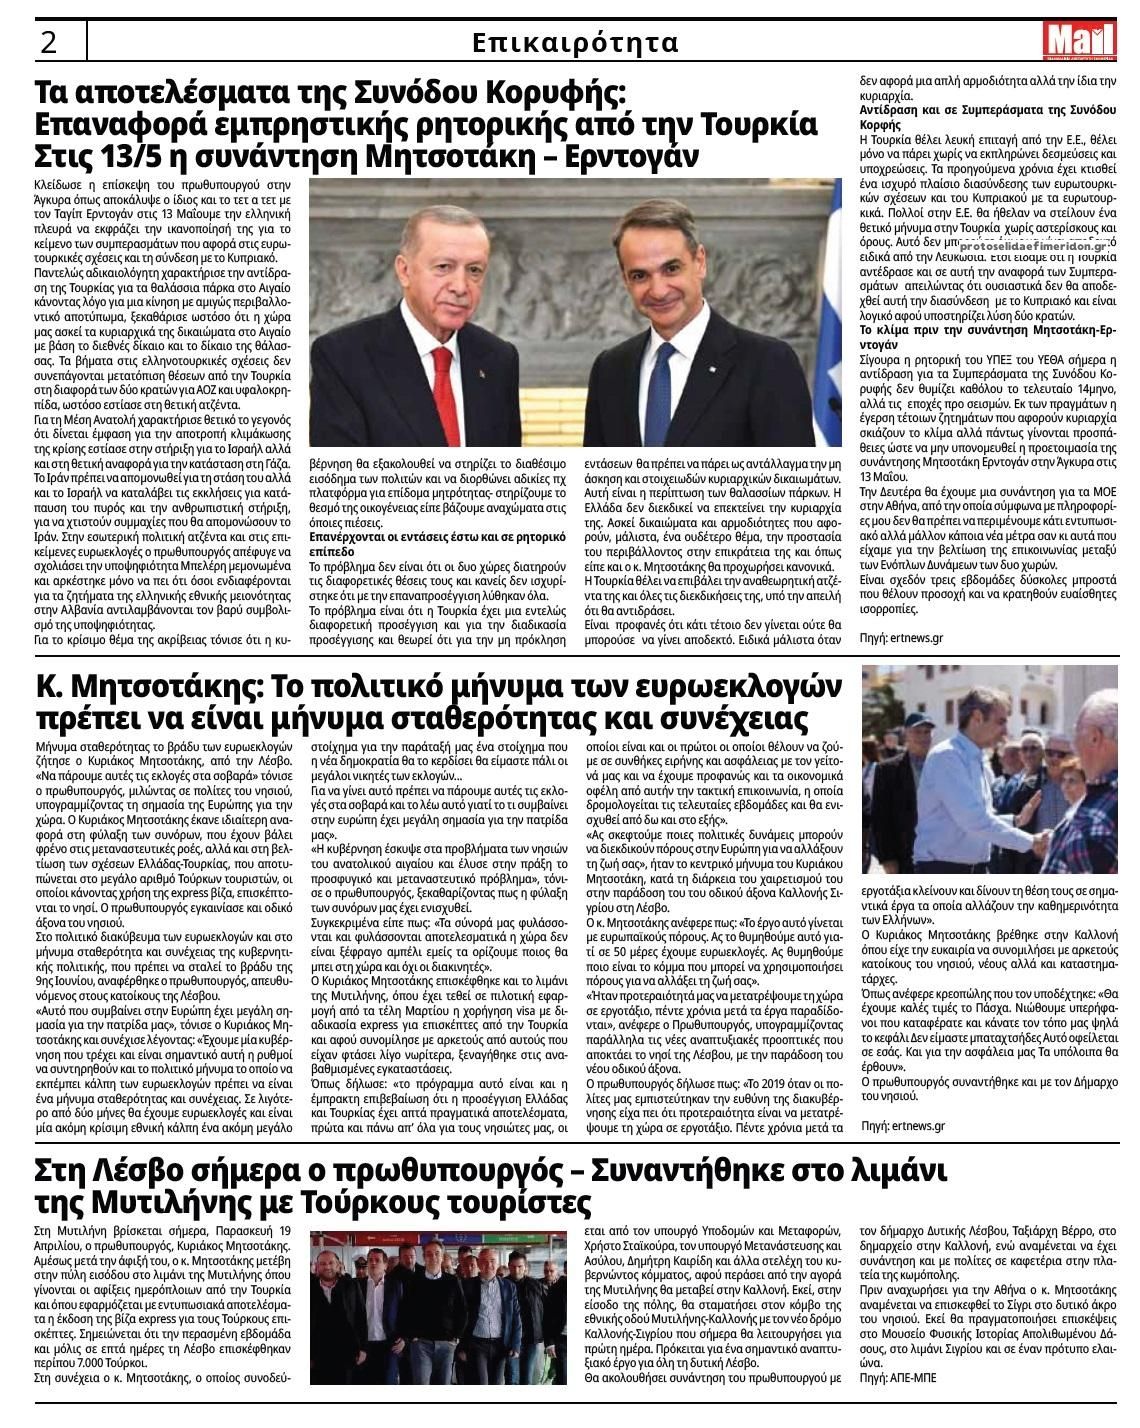 Οπισθόφυλλο εφημερίδας Hellenic Mail